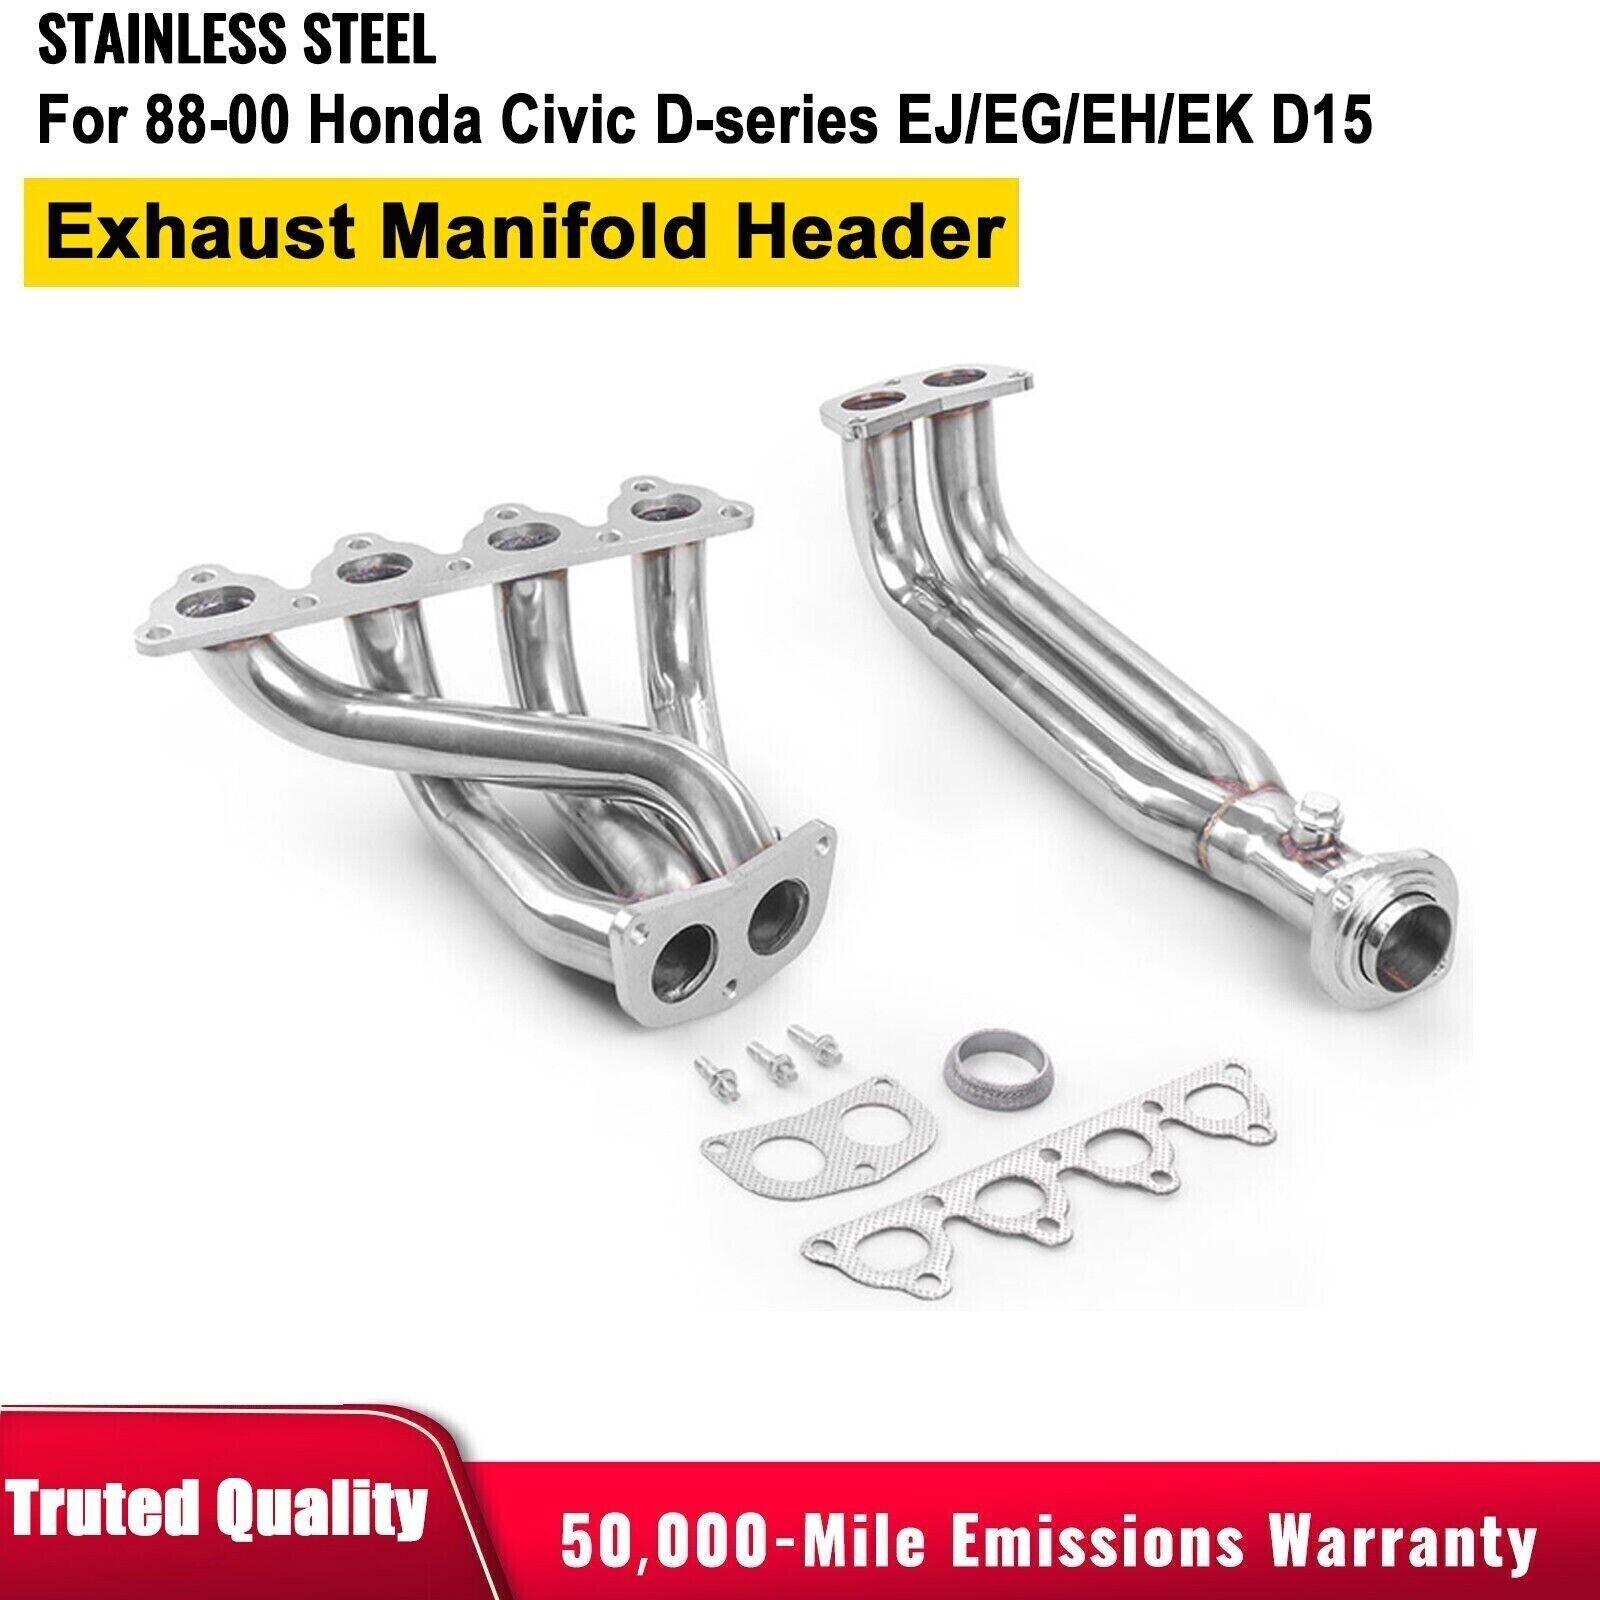 Stainless ExhaustManifoldHeader For 88-00 Honda Civic D-series EJ/EG/EH/EK D16